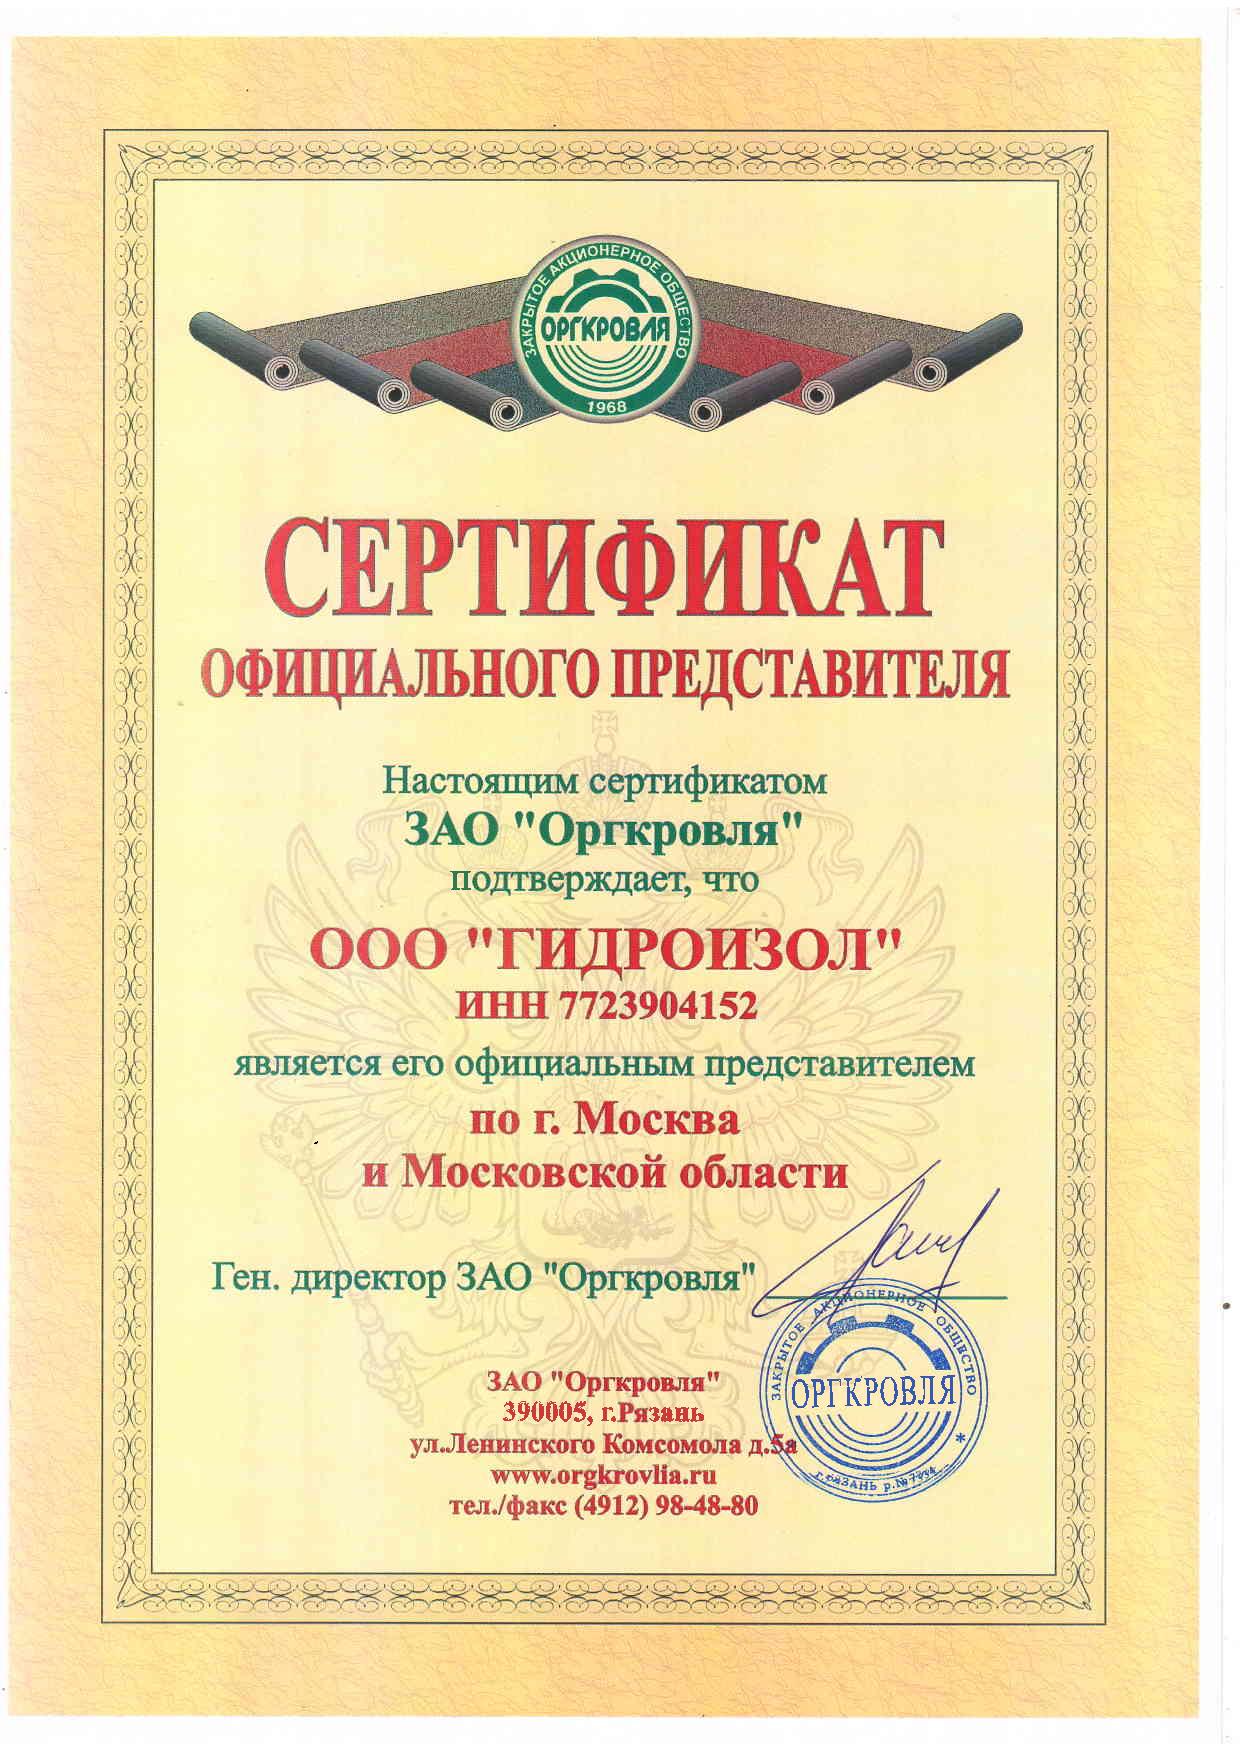 Сертификат ООО ГИДРОИЗОЛ официального представителя ЗАО Оргкровля